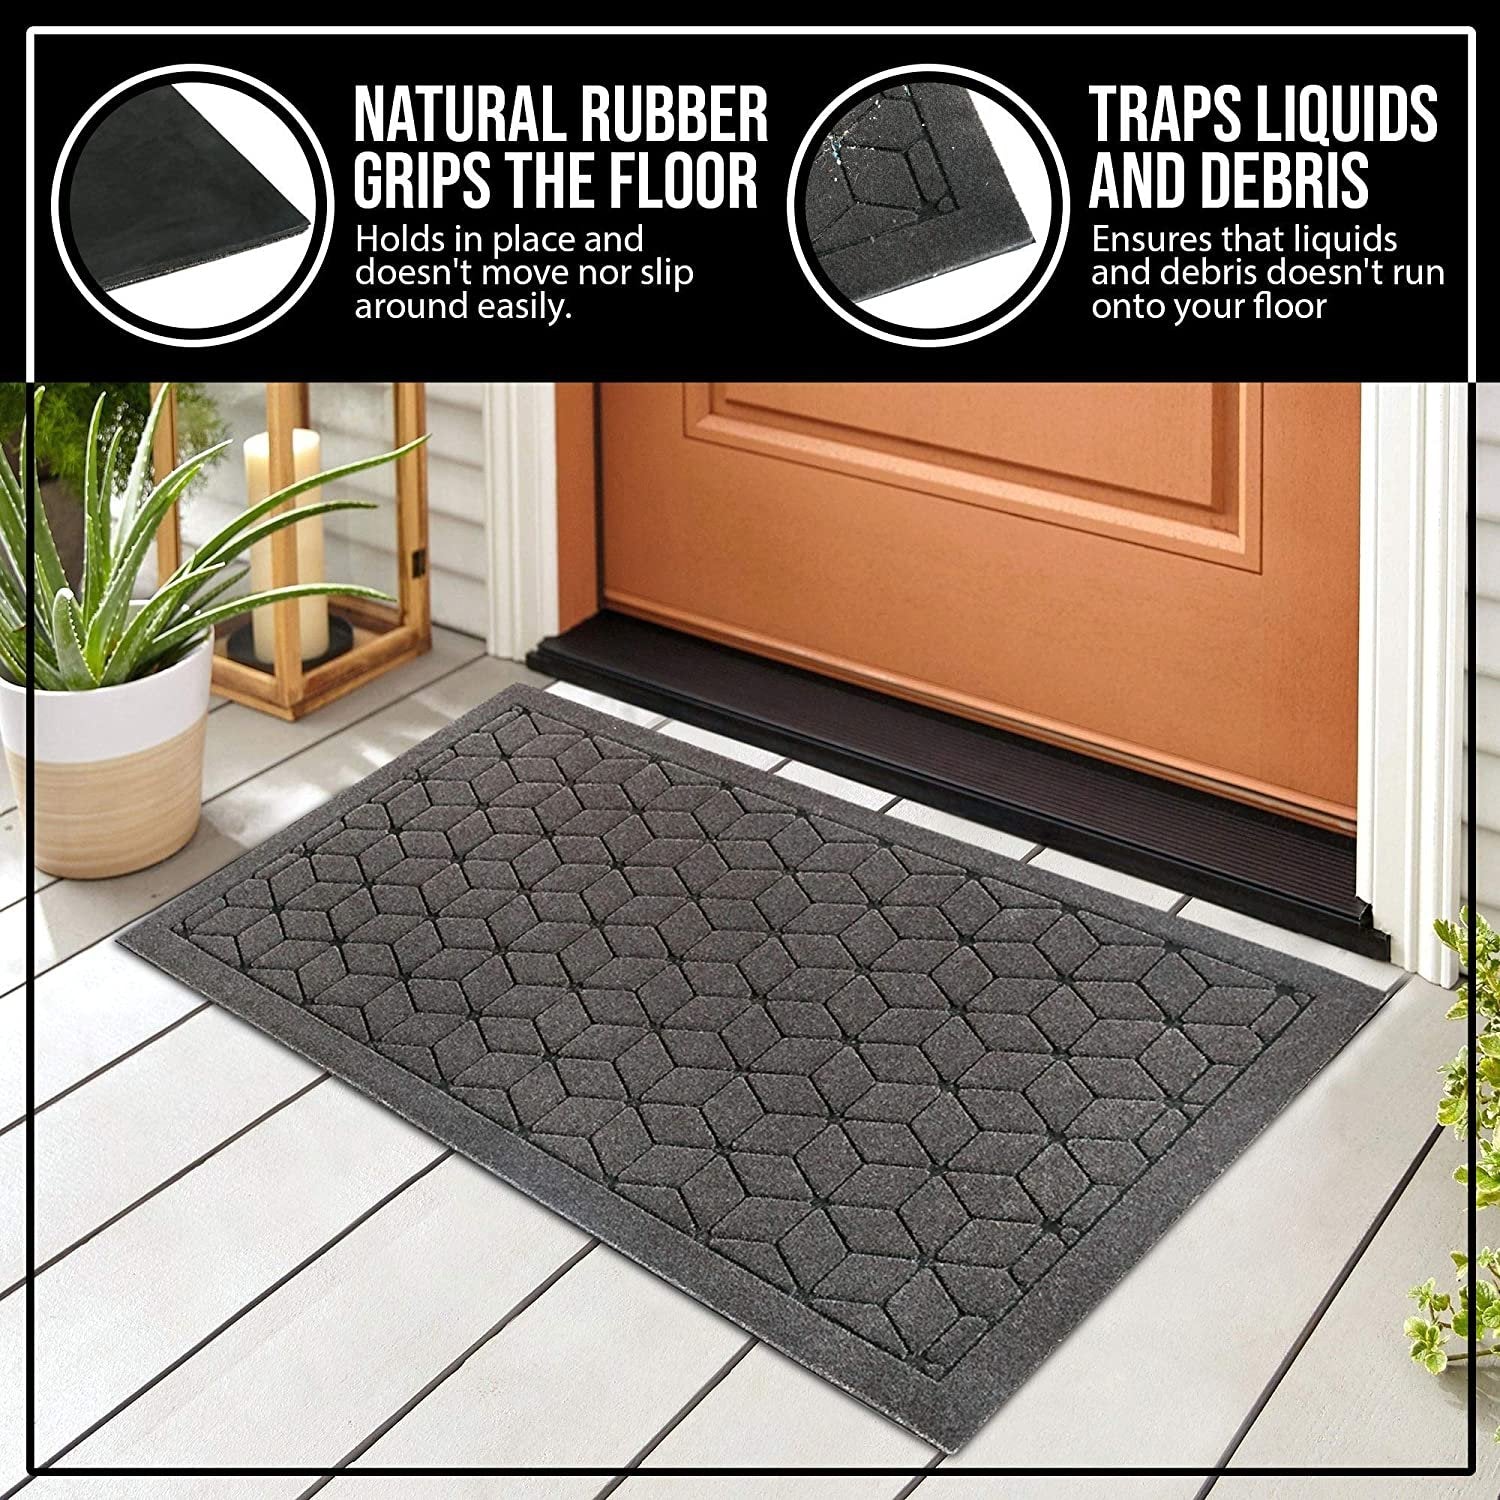 Diamonds Indoor/outdoor Coir Doormat Natural/black - Entryways